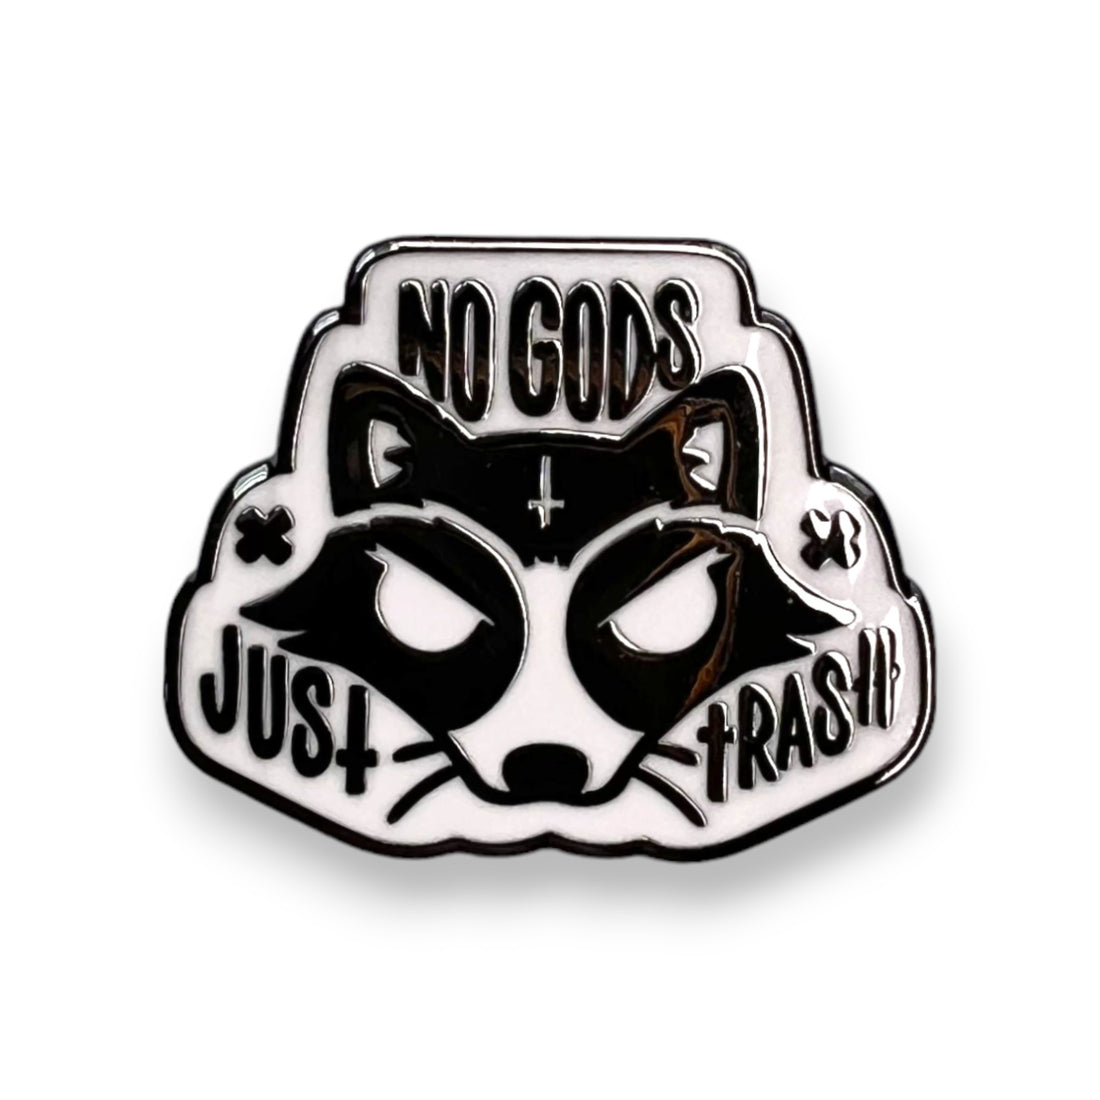 NEW: No Gods, Just Trash Pin